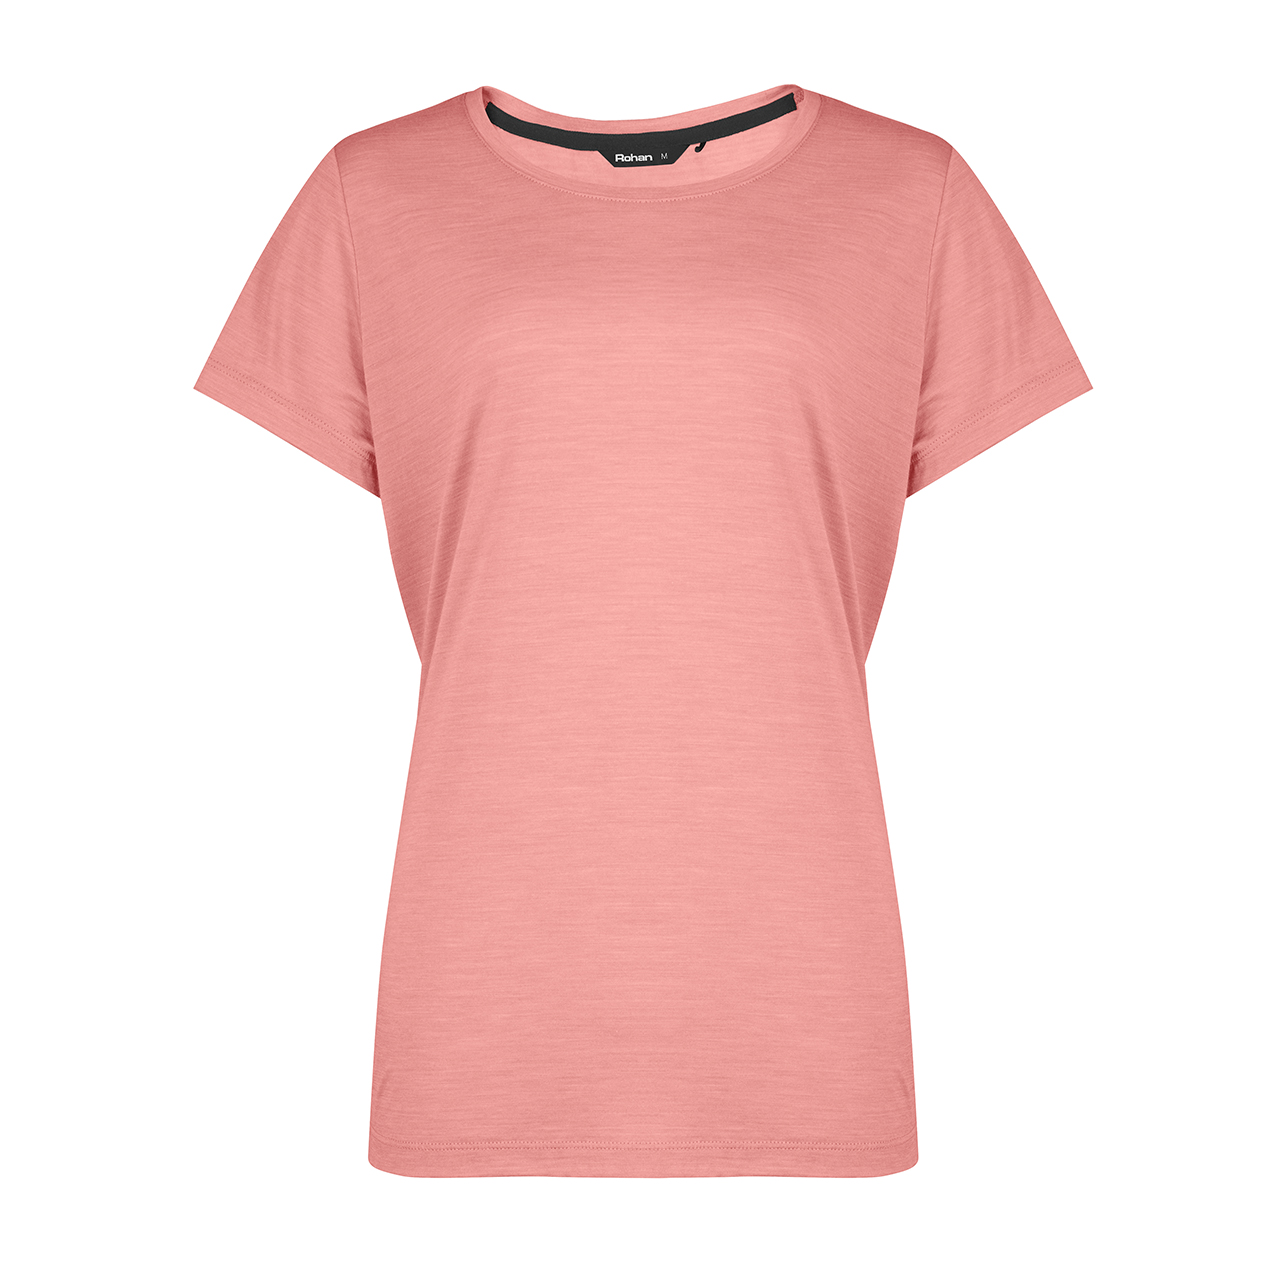 Women’s Merino Cool Short Sleeve T-Shirt